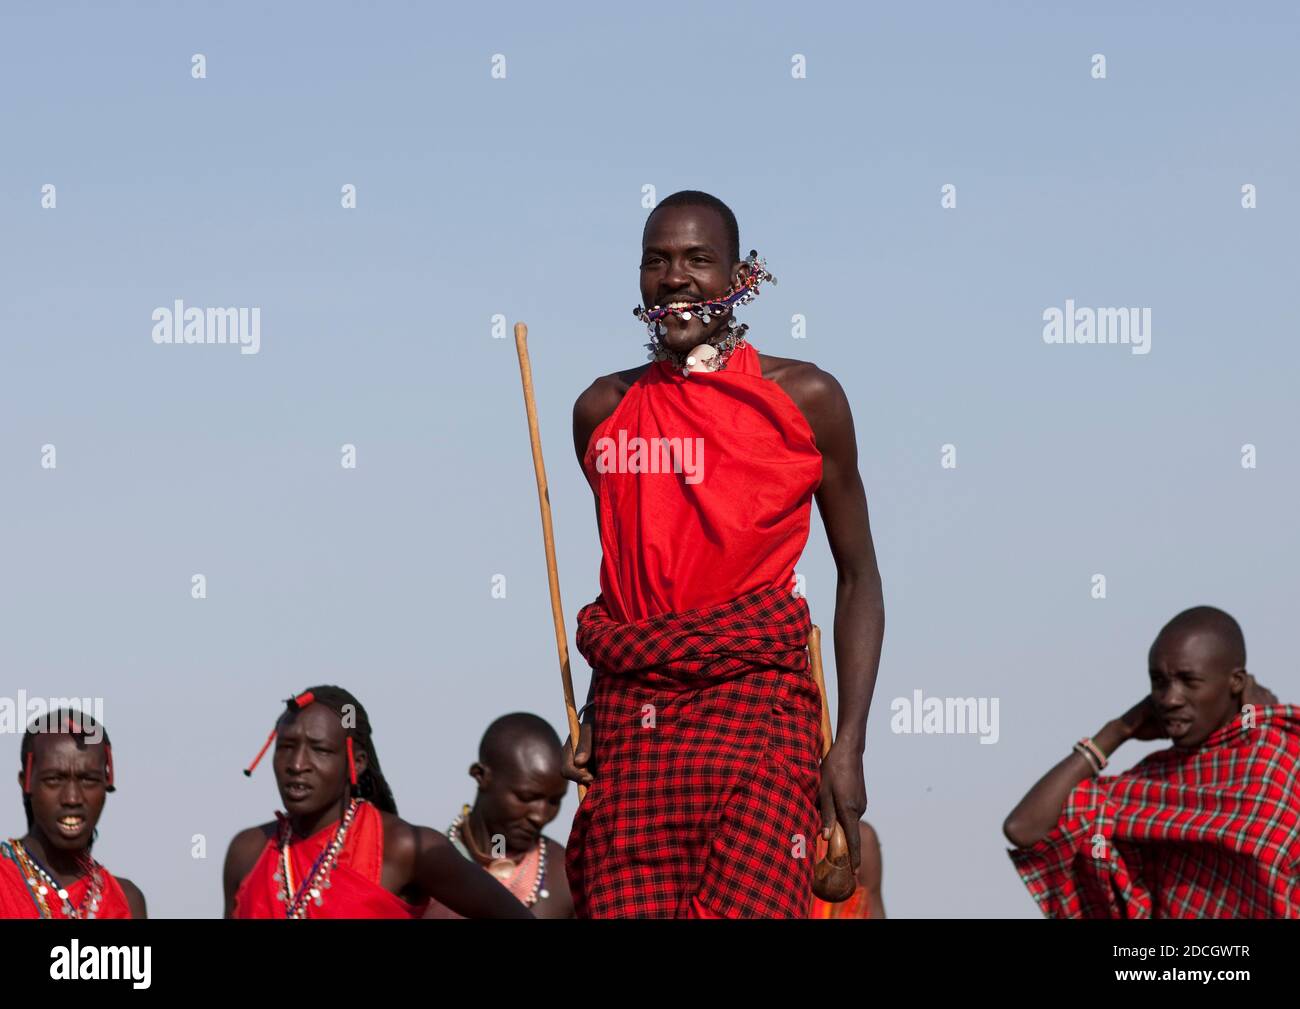 Maasai tribe men jumping during a ceremony, Rift Valley Province, Maasai Mara, Kenya Stock Photo